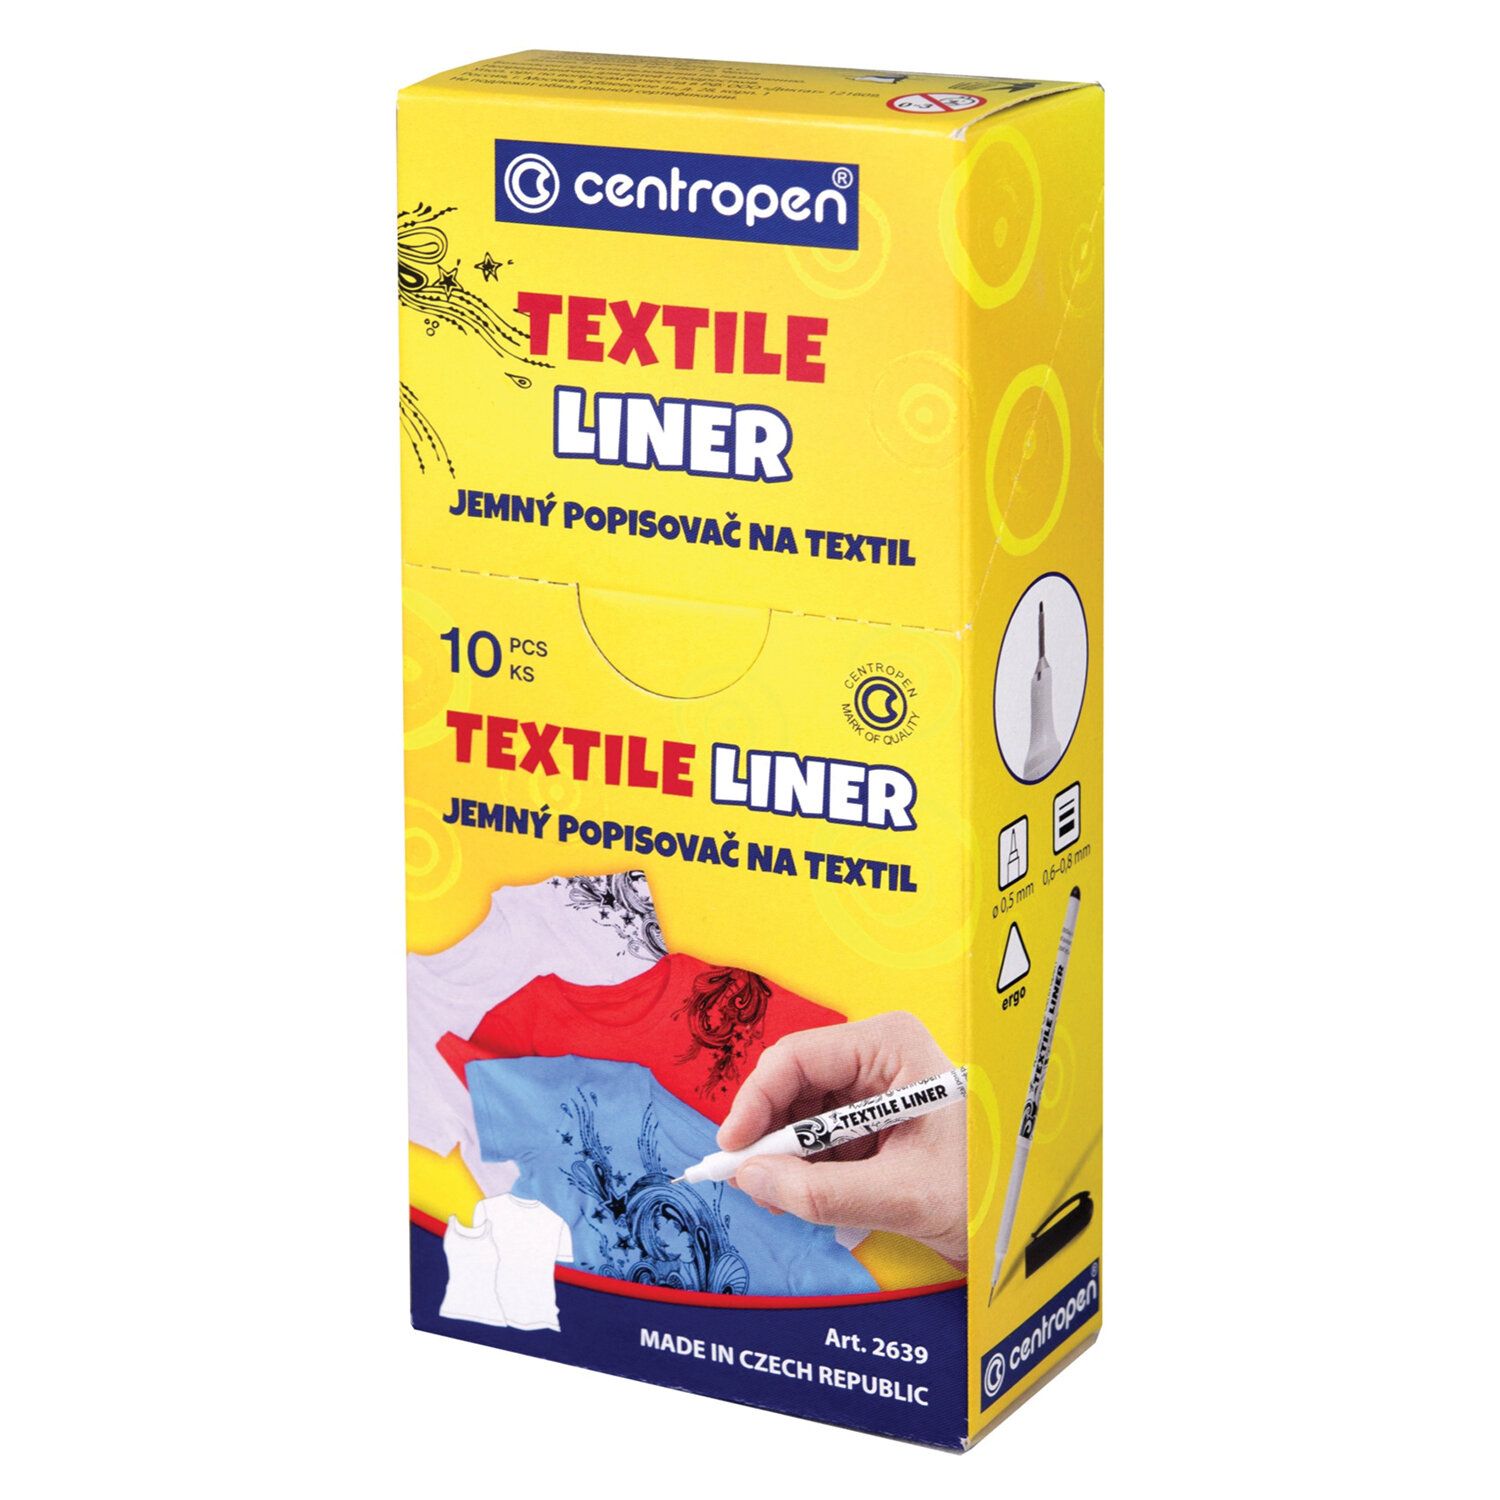 Маркер для ткани ЧЕРНЫЙ CENTROPEN "Textile Liner", игольчатый наконечник, 0,6-0,8 мм, 2639, 5 2639 0112